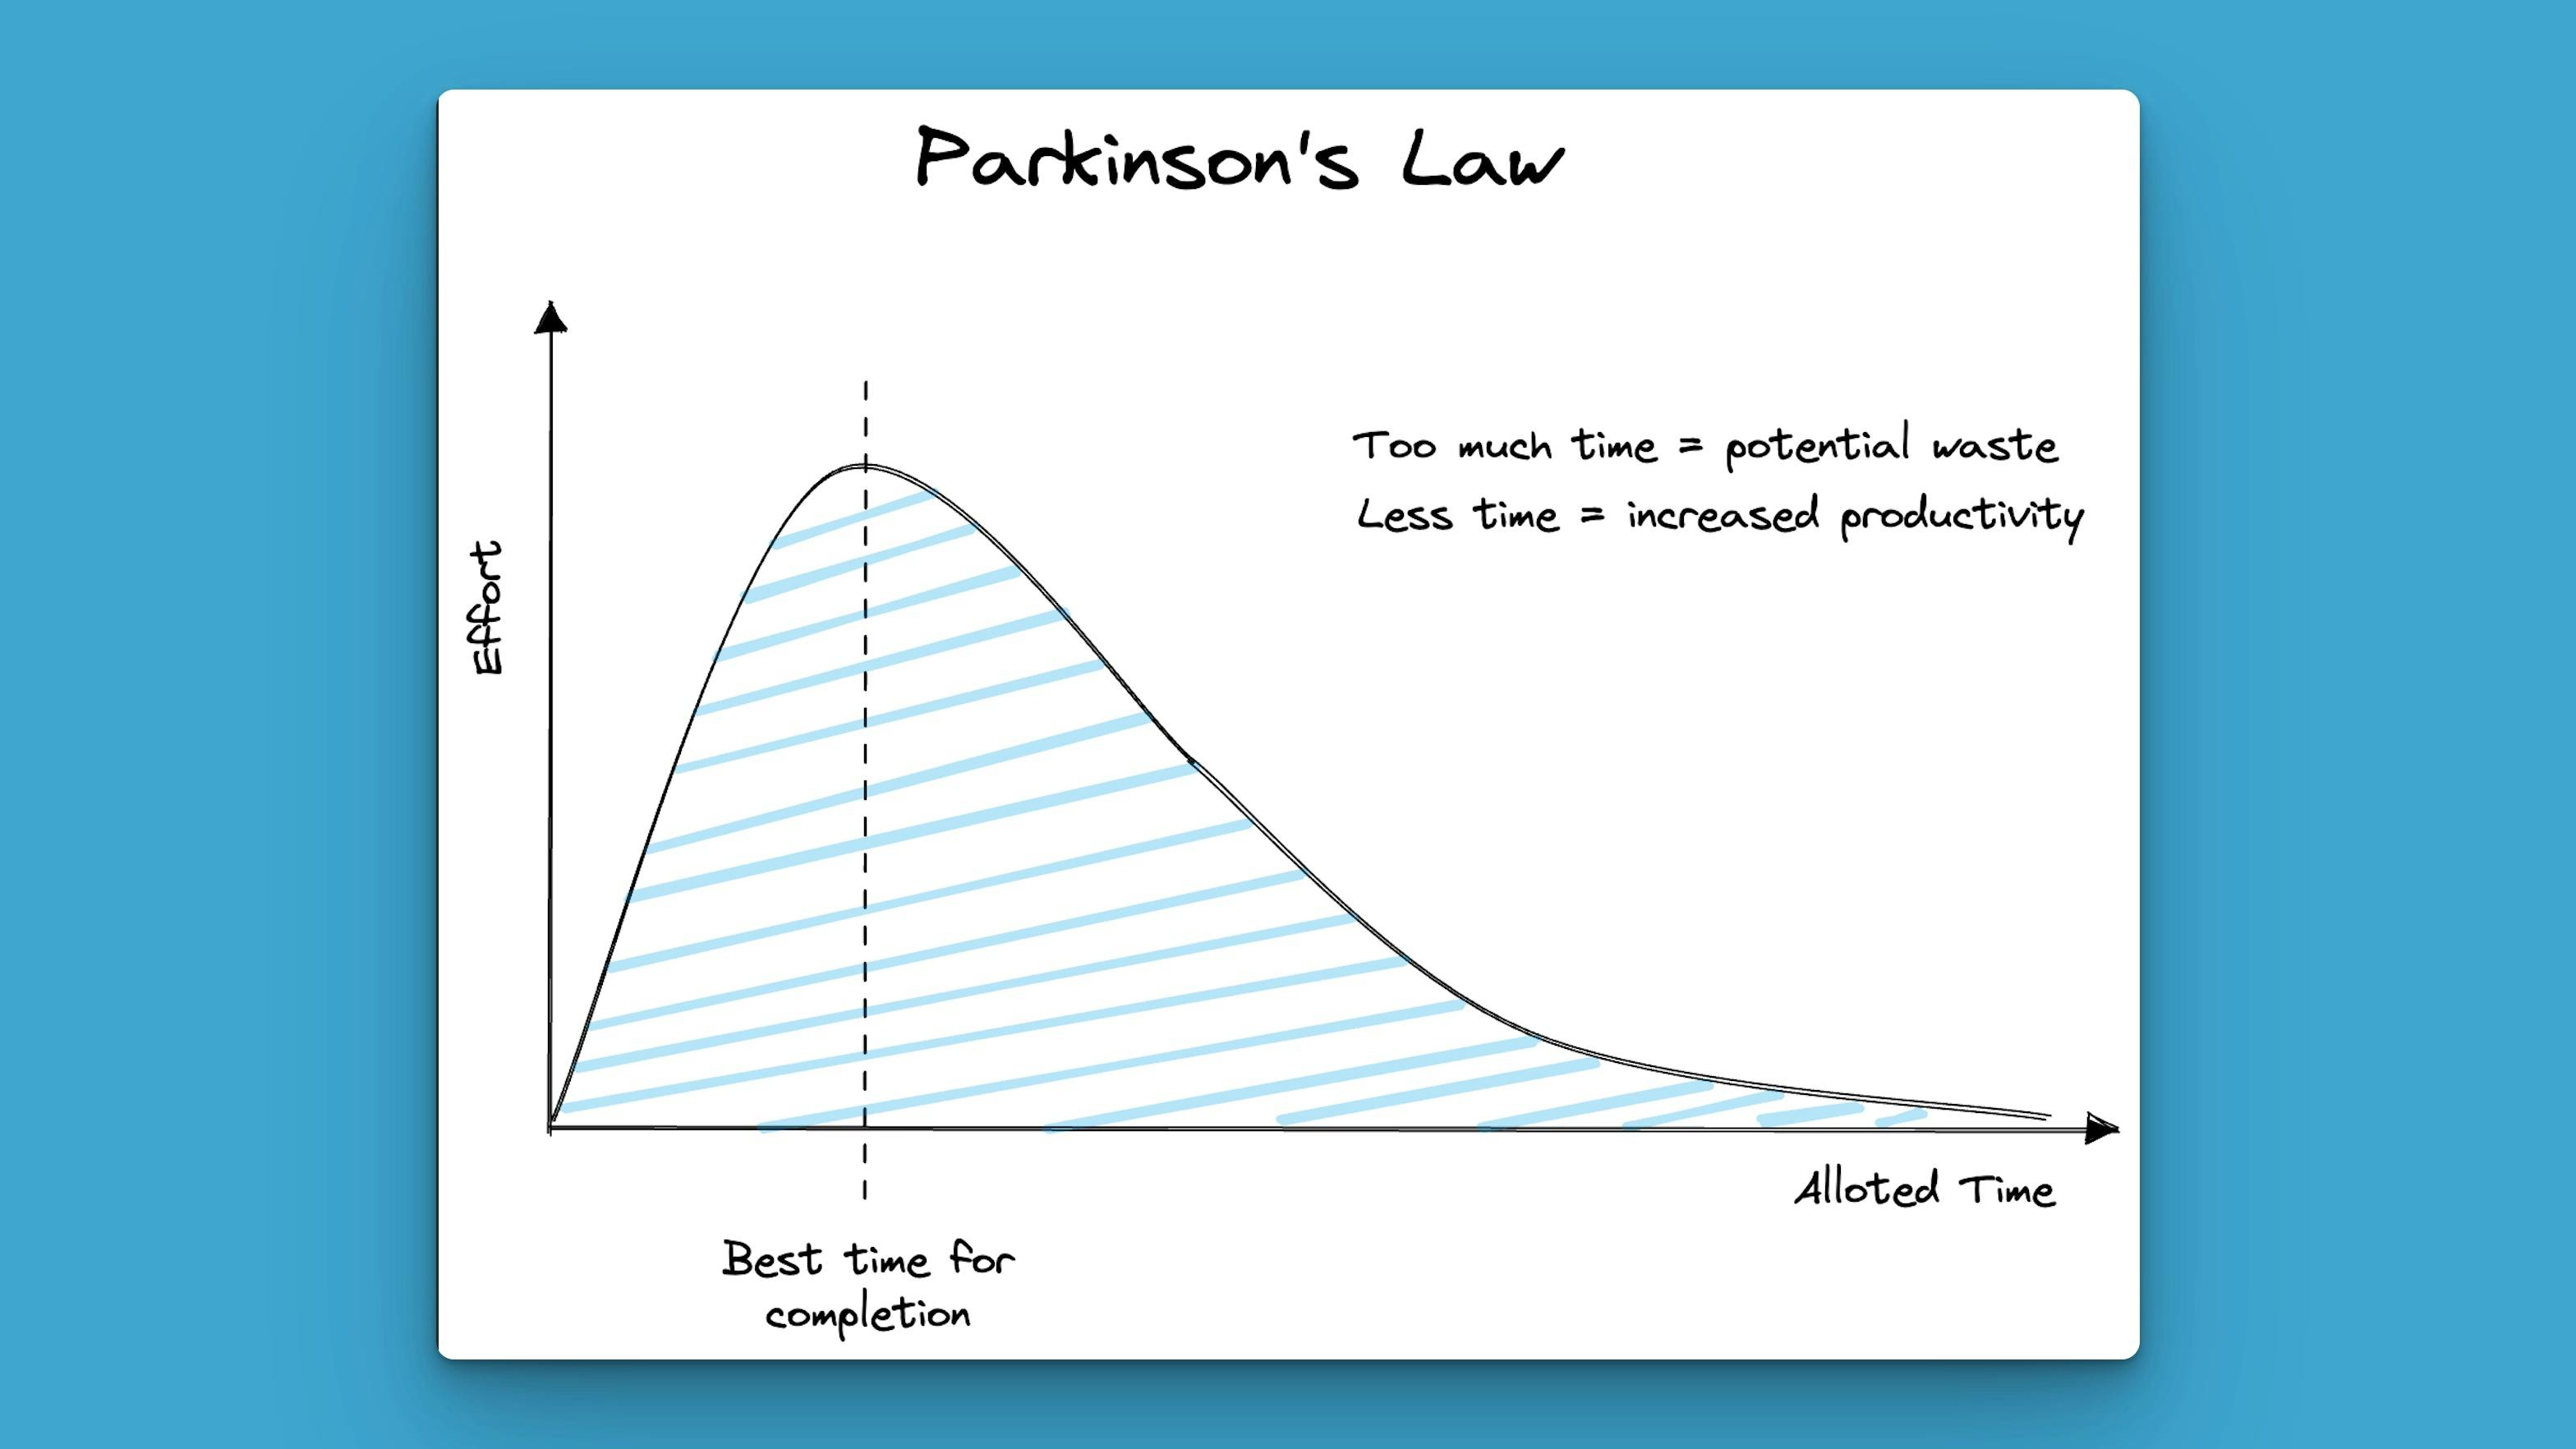 Parkinsons law